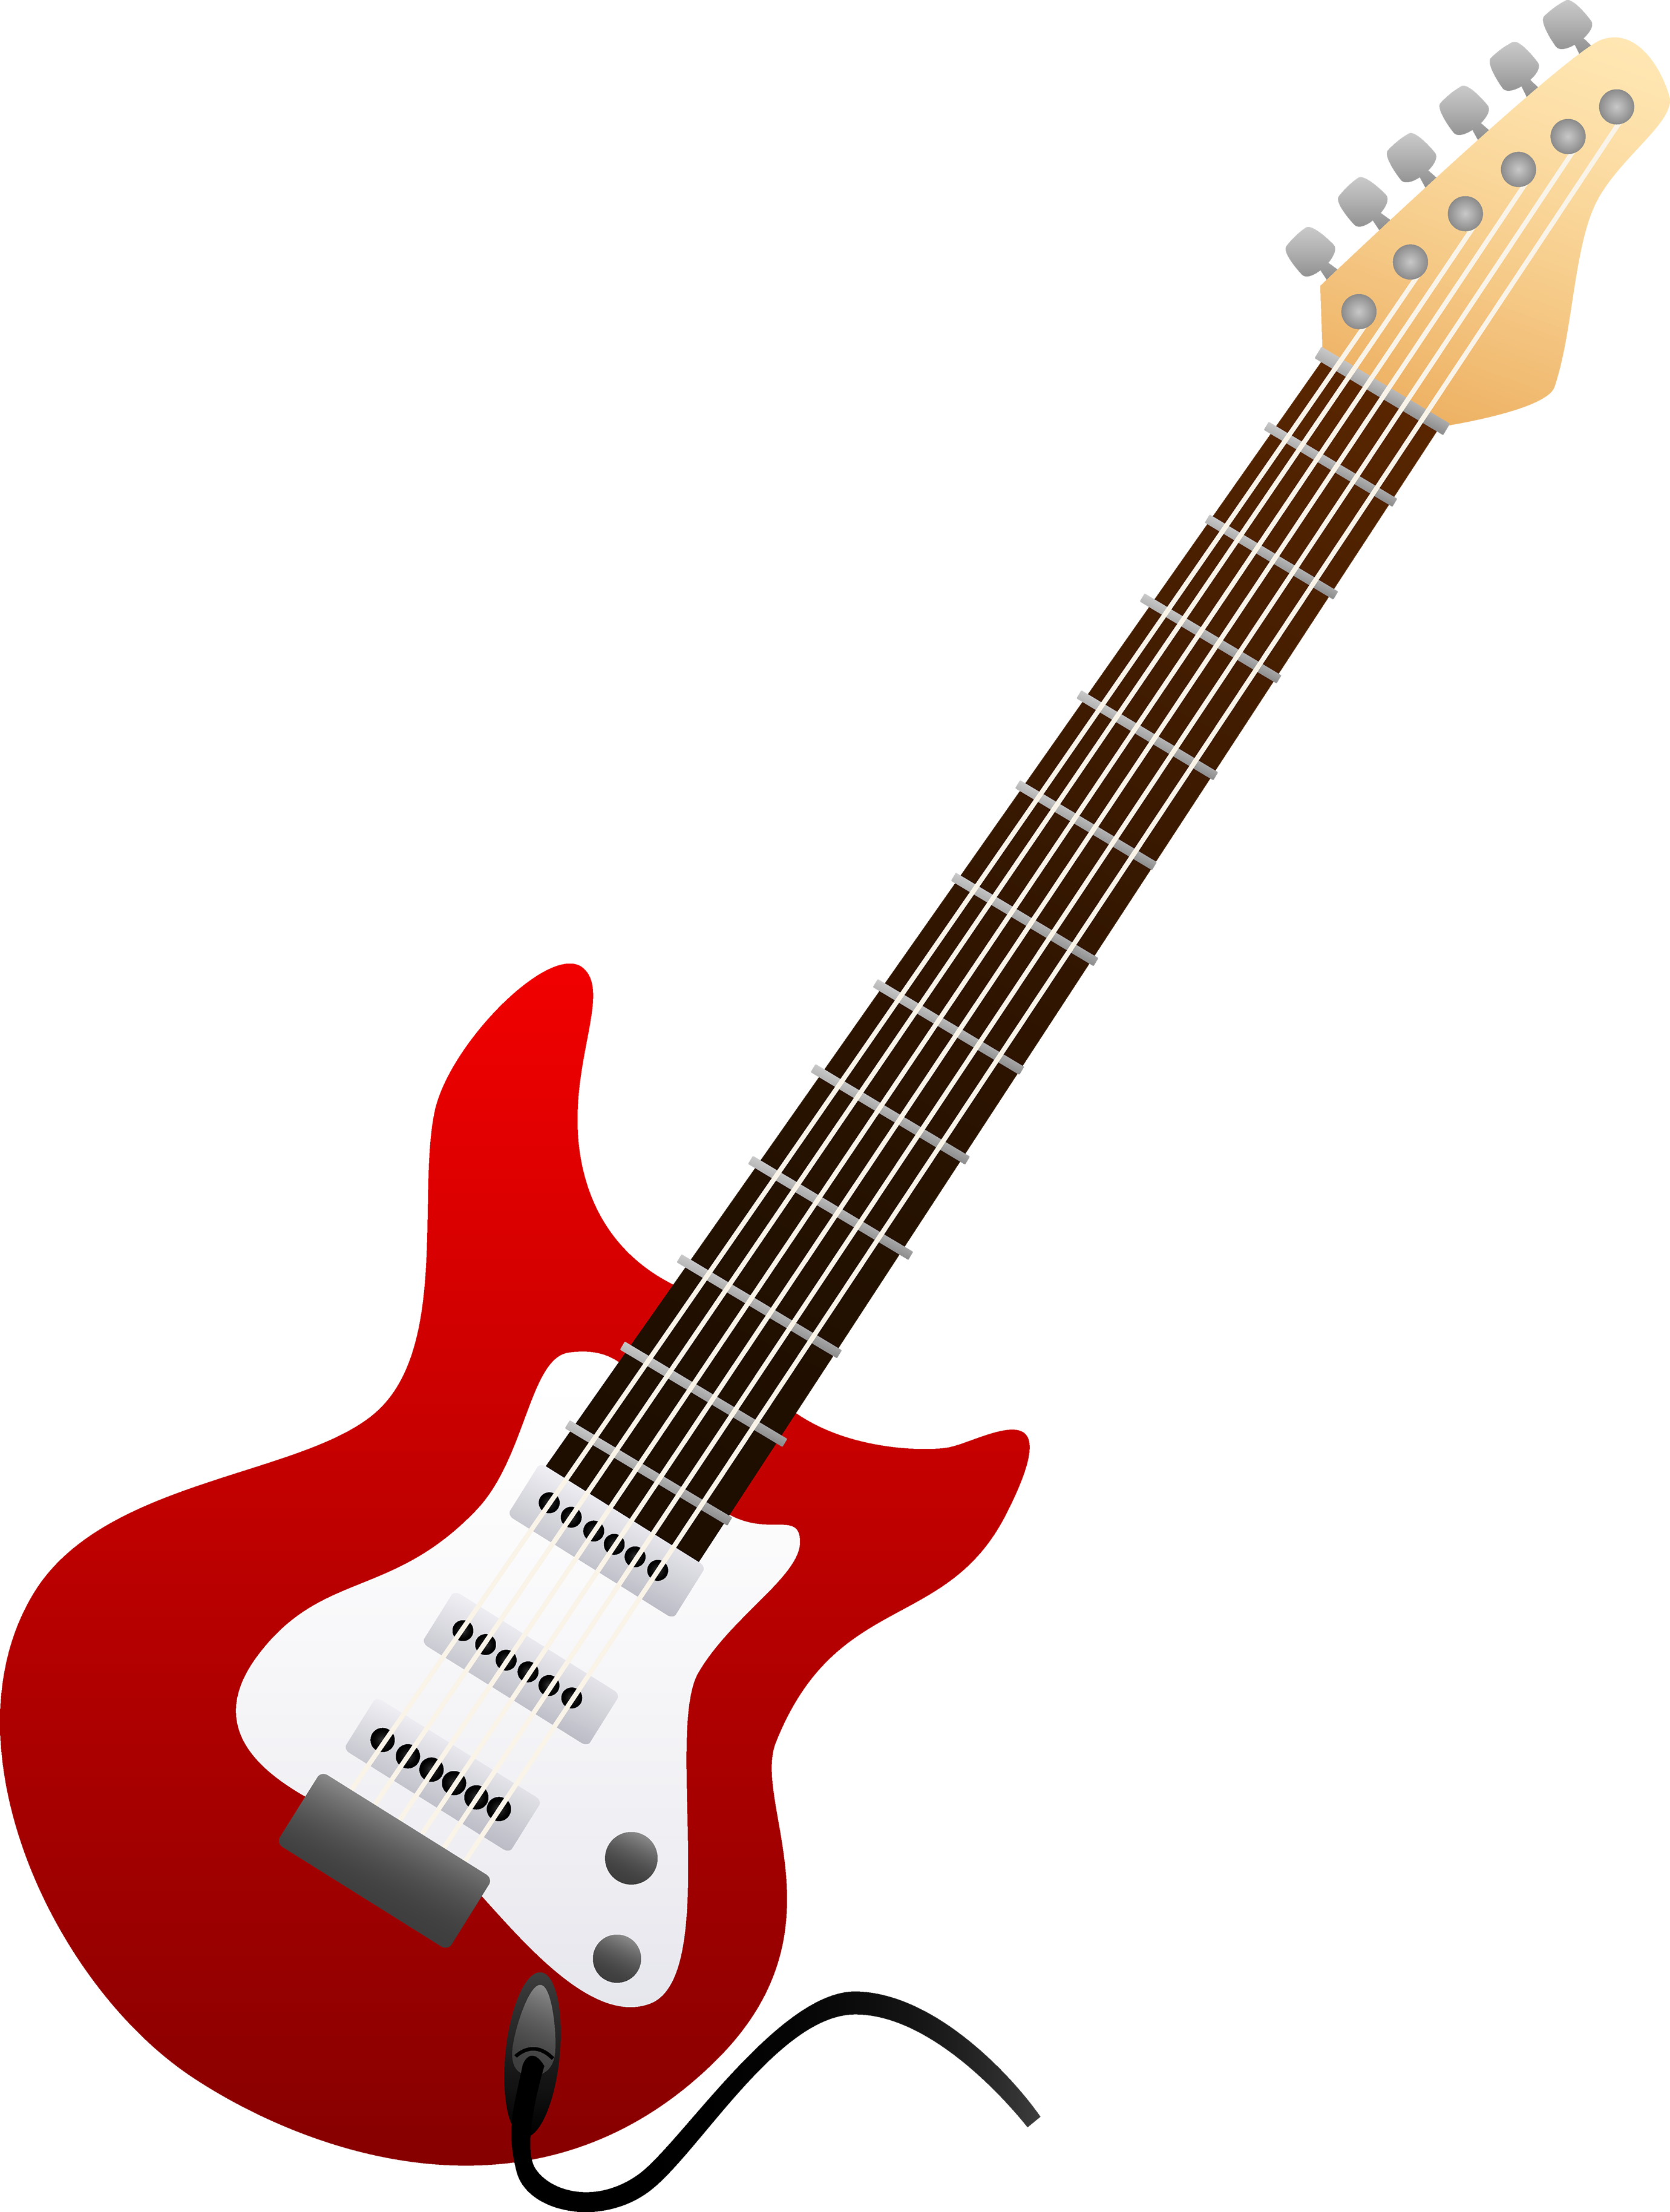 Fundo transparente de guitarra de rocha vermelha